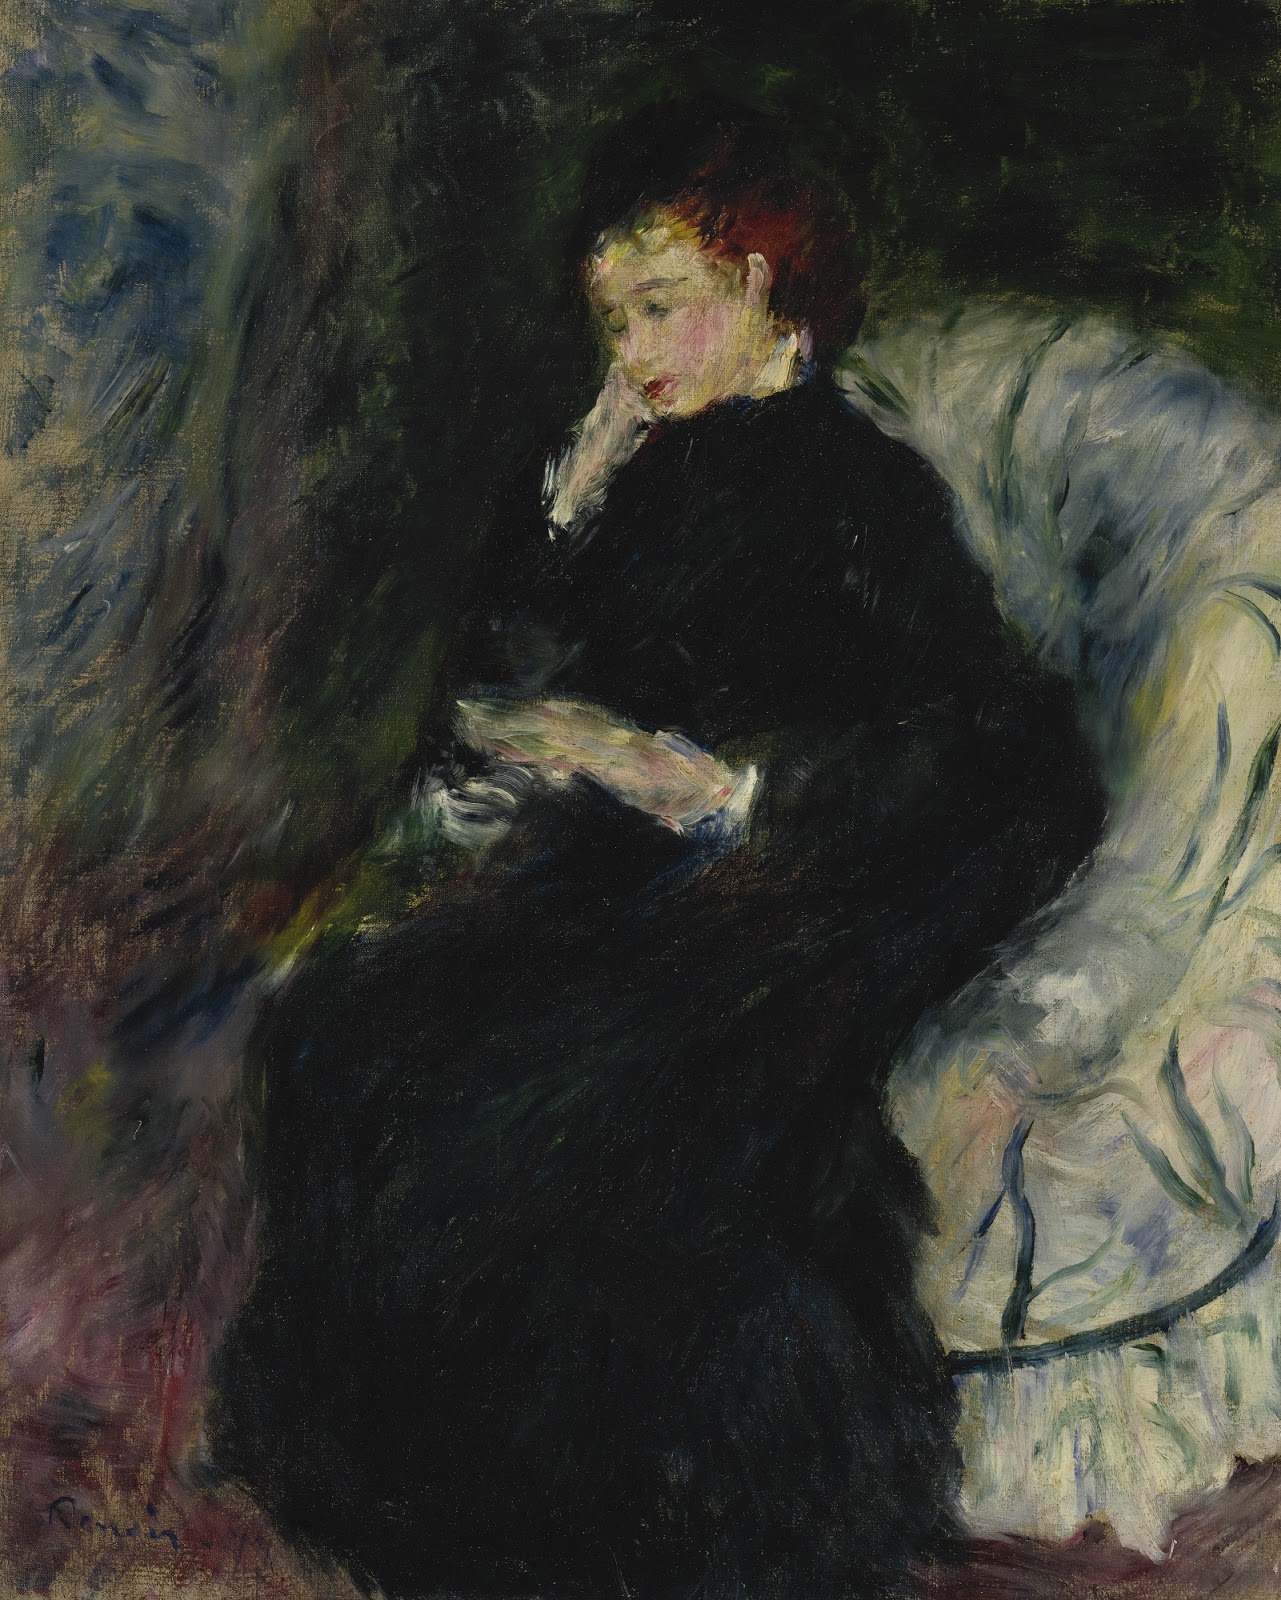 Pierre+Auguste+Renoir-1841-1-19 (986).jpg